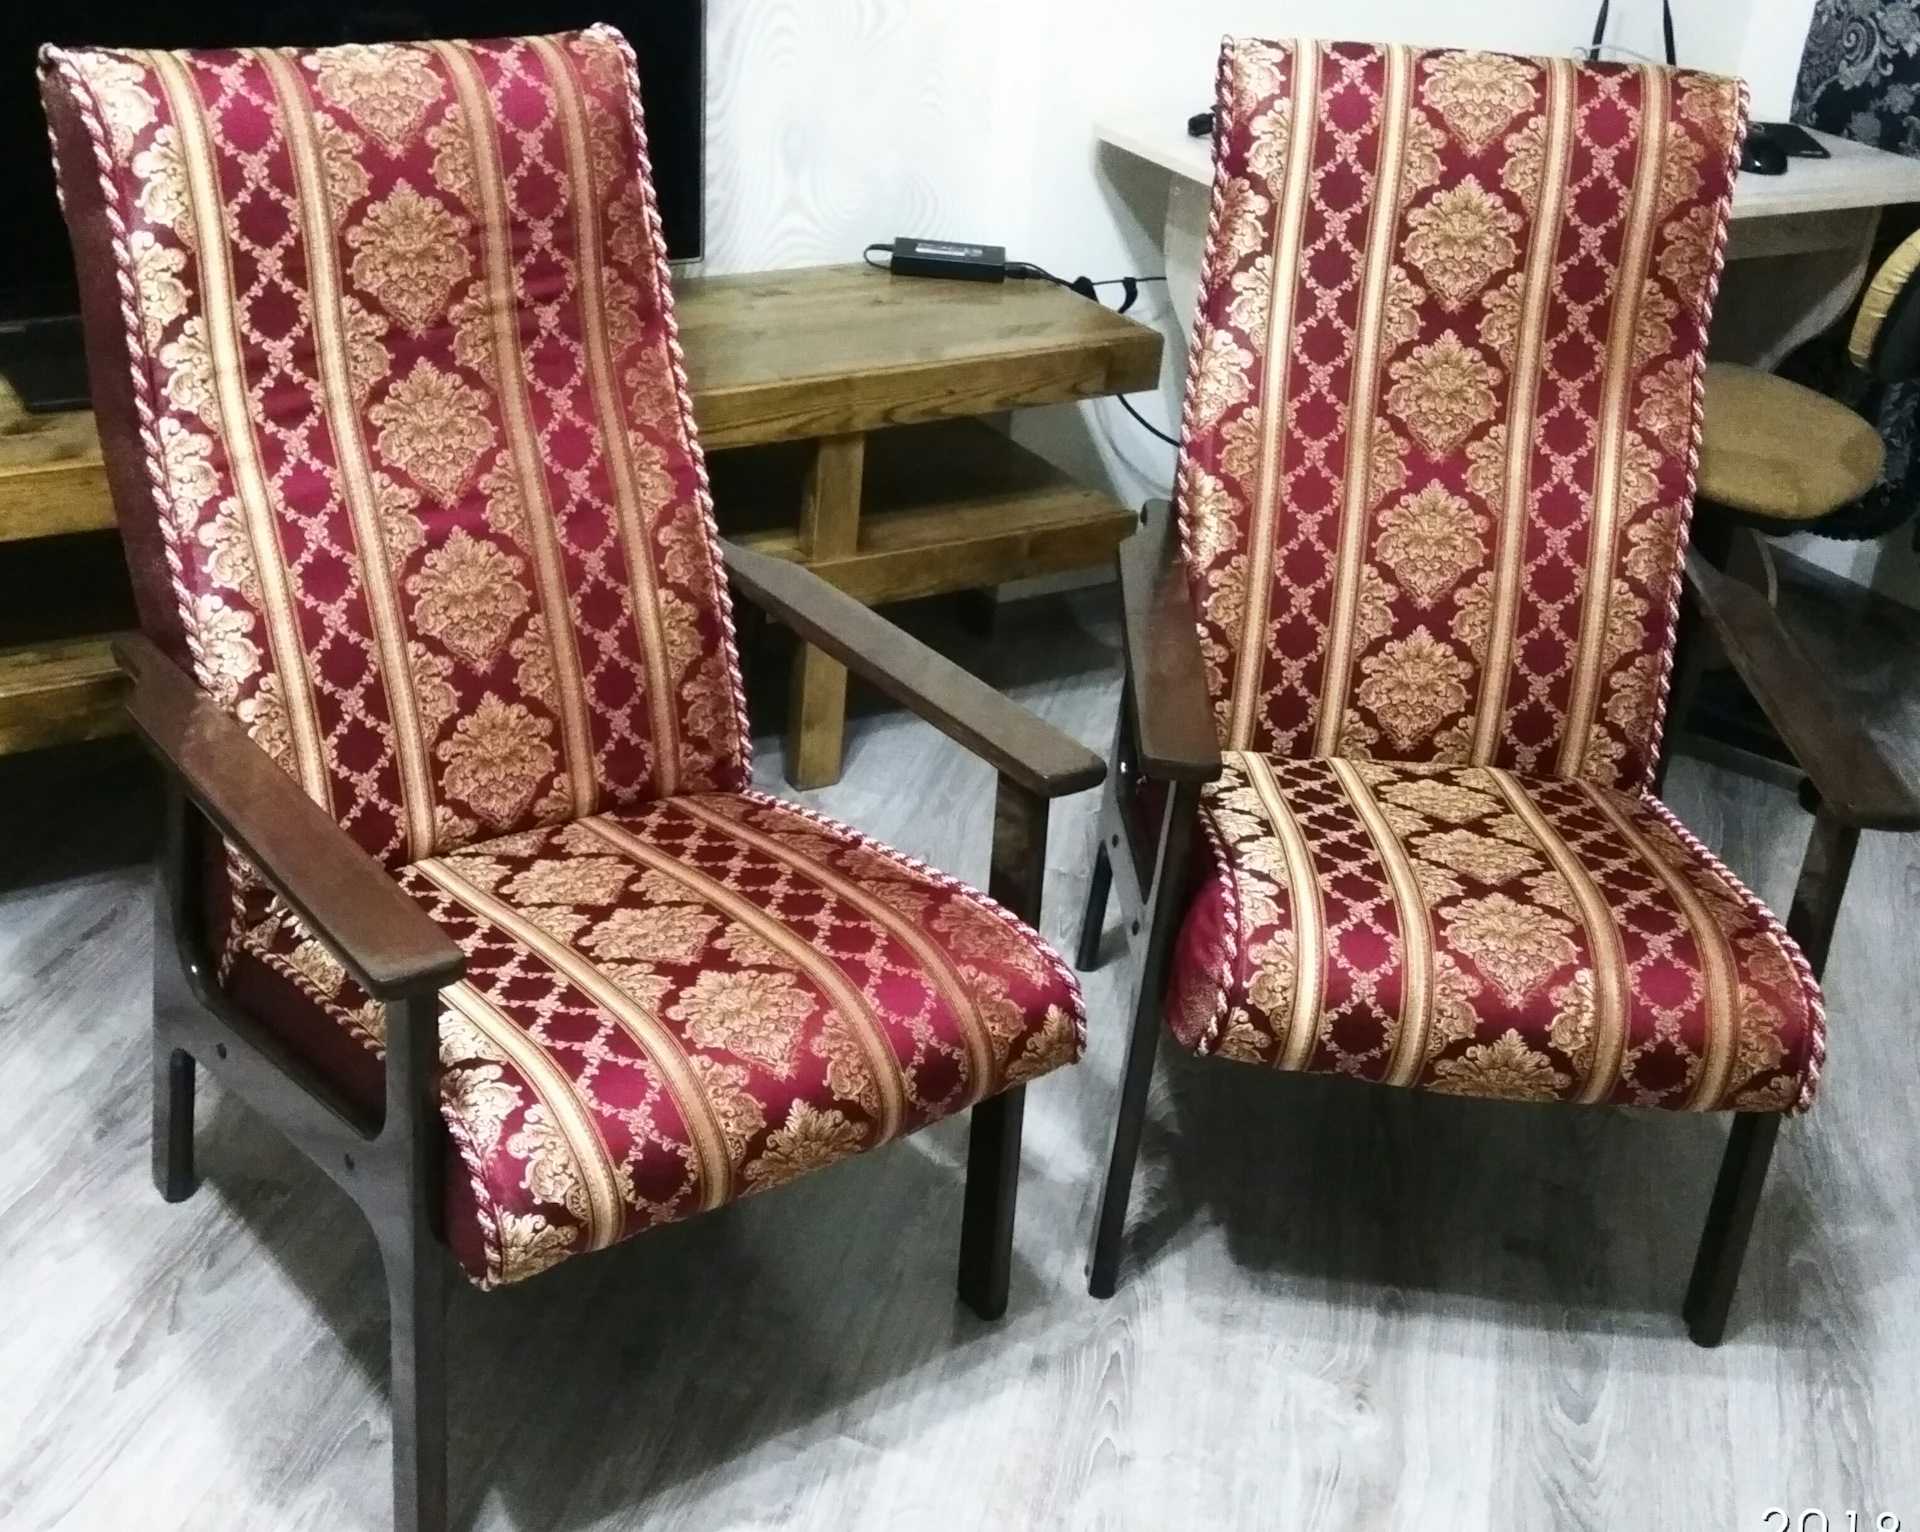 Реставрация деревянного кресла. Реставрируем старое кресло. Реставрированные советские кресла. Старого кресла с деревянными подлокотниками. Кресло "Стар".